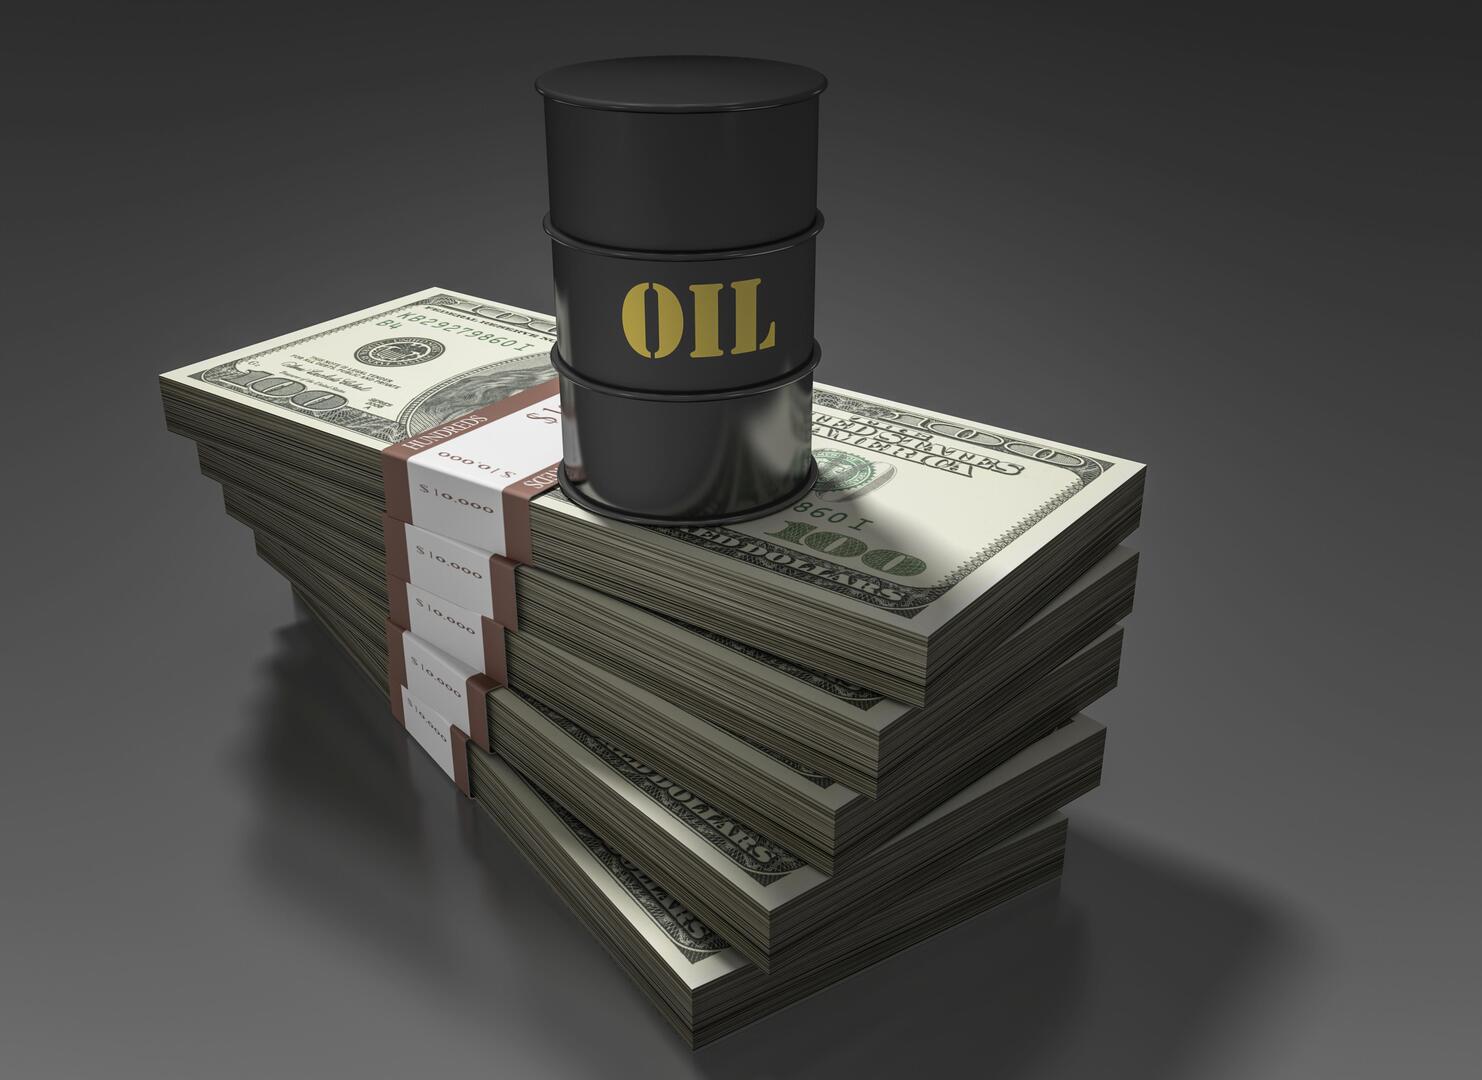 اليابان تشتري النفط الروسي بسعر أعلى من السقف المحدد